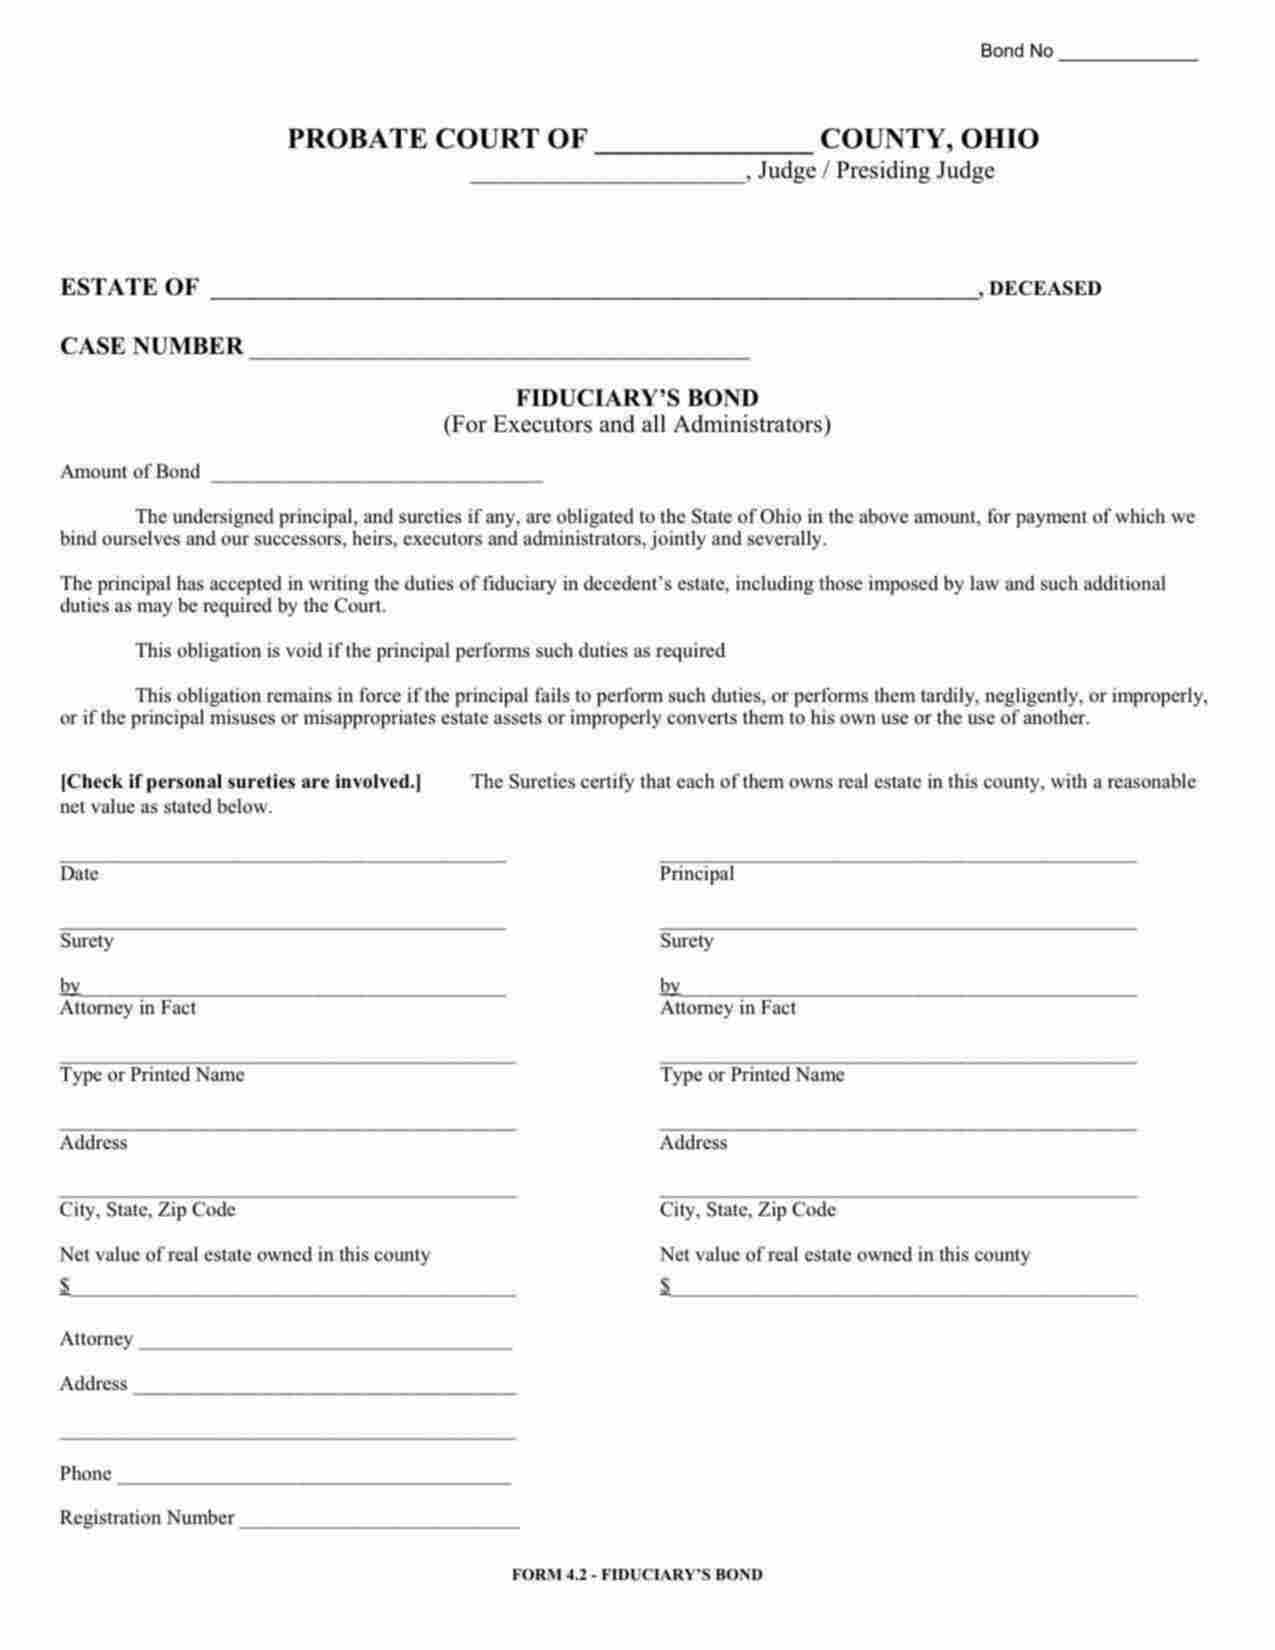 Ohio Administrator/Executor Bond Form